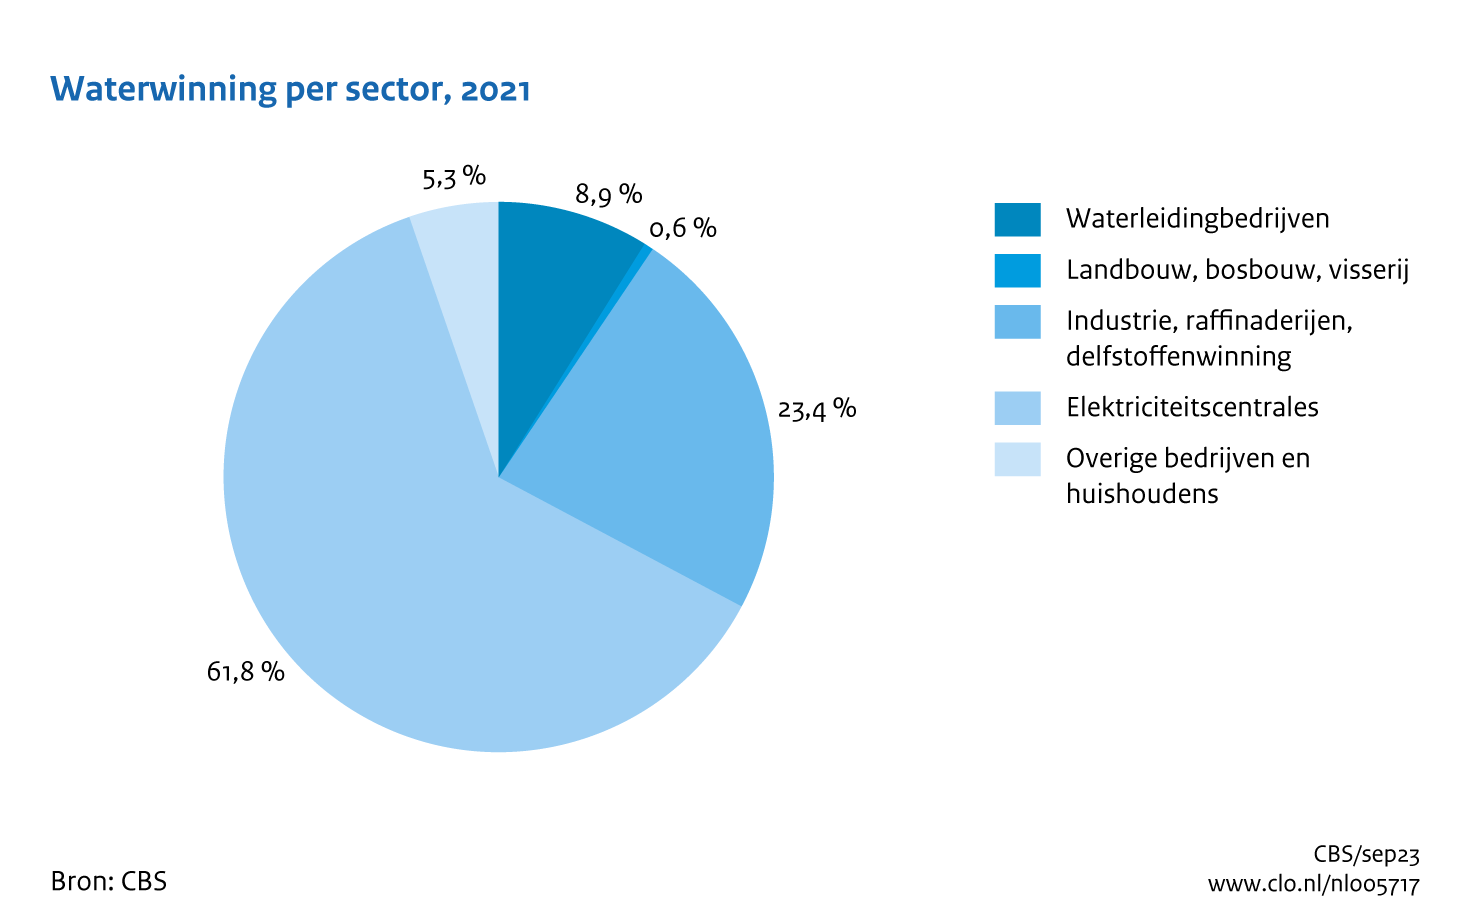 Figuur Waterwinning sectoren 2021. In de rest van de tekst wordt deze figuur uitgebreider uitgelegd.